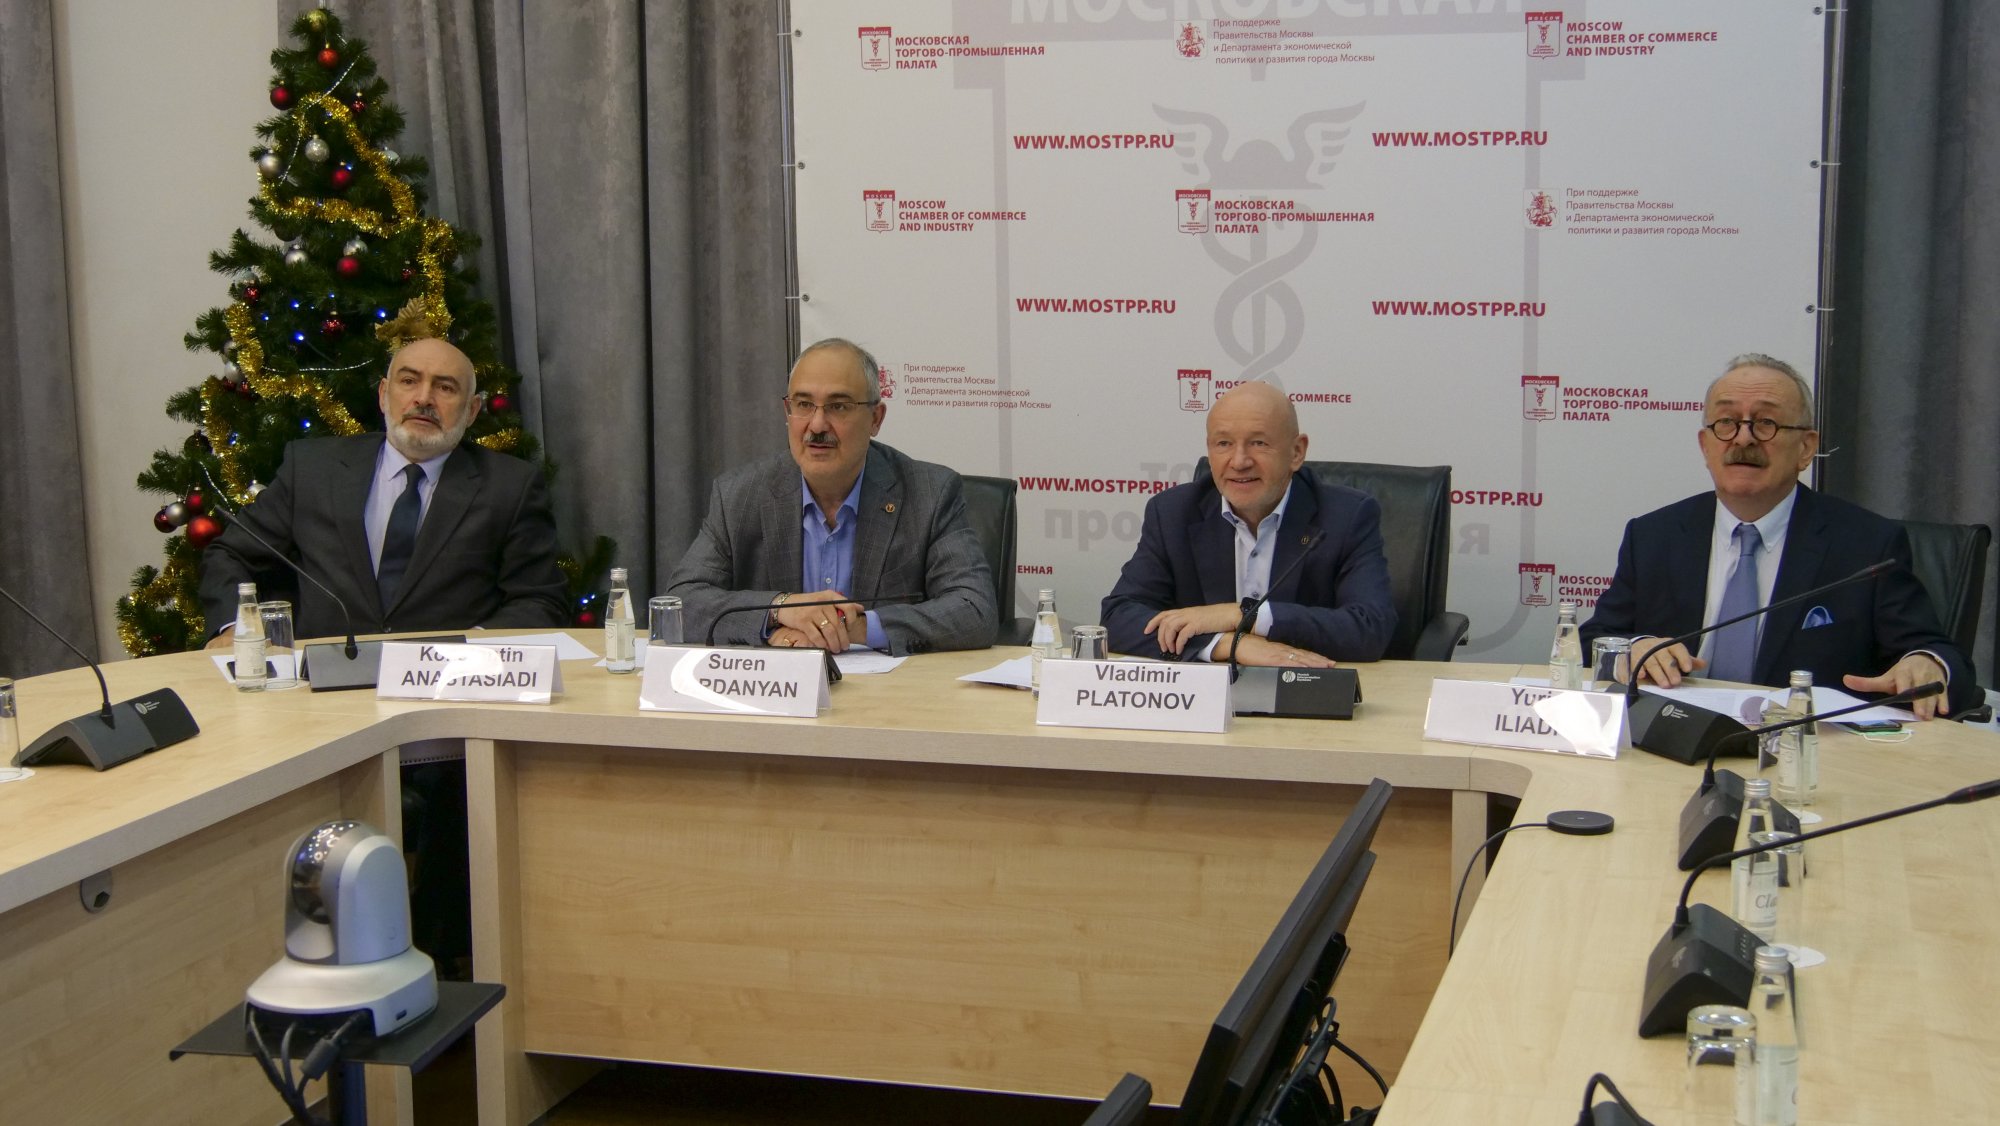 В МТПП обсудили развитие греко-российских связей